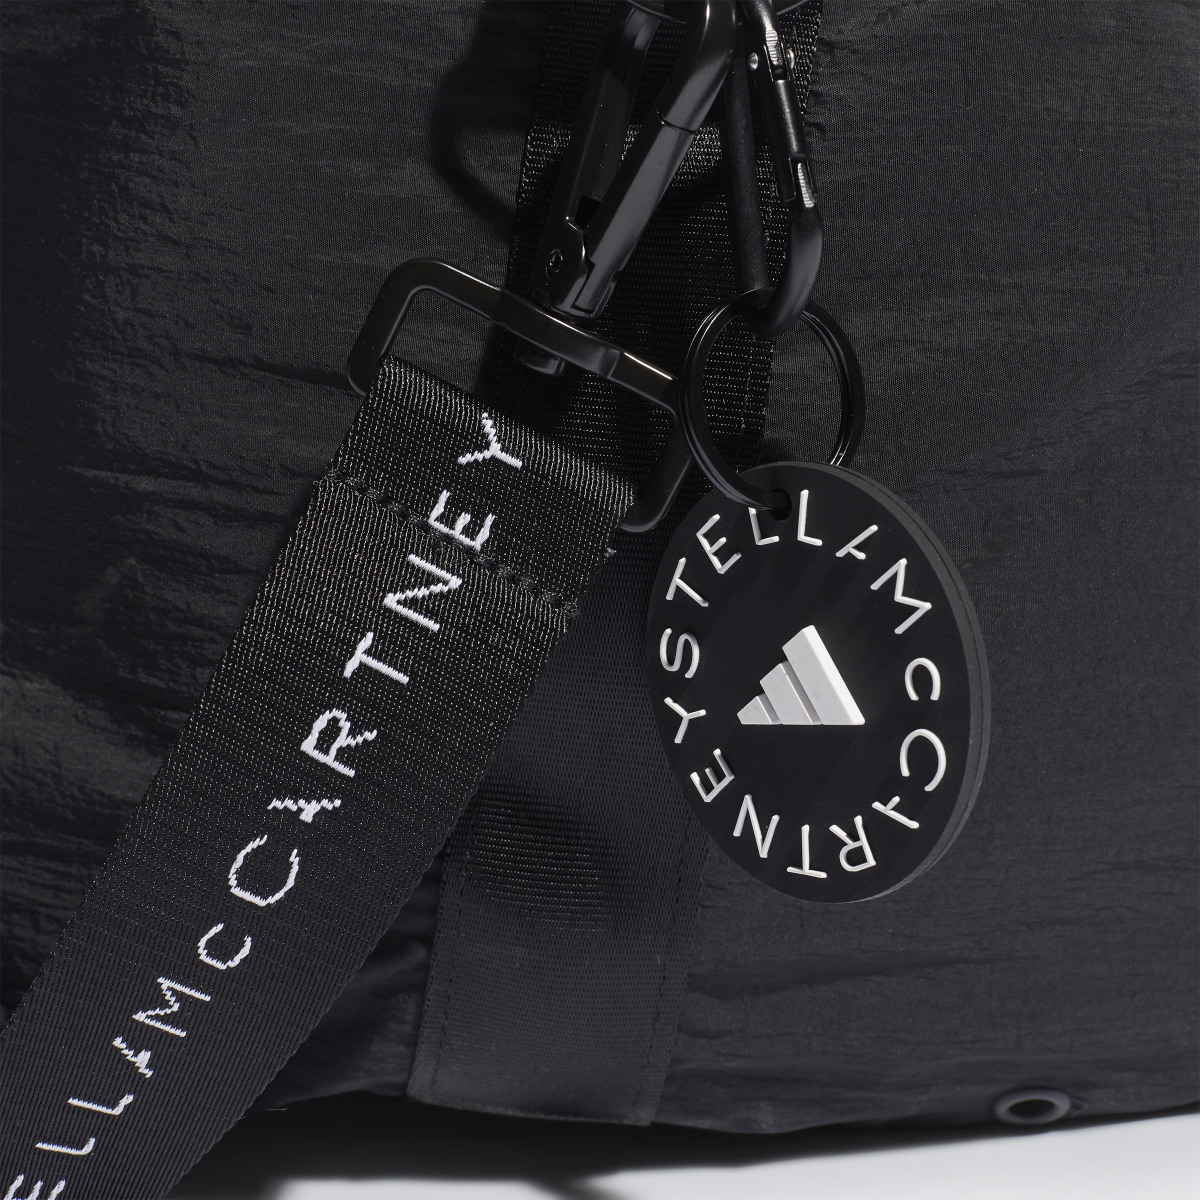 Adidas by Stella McCartney Studio Bag. 6